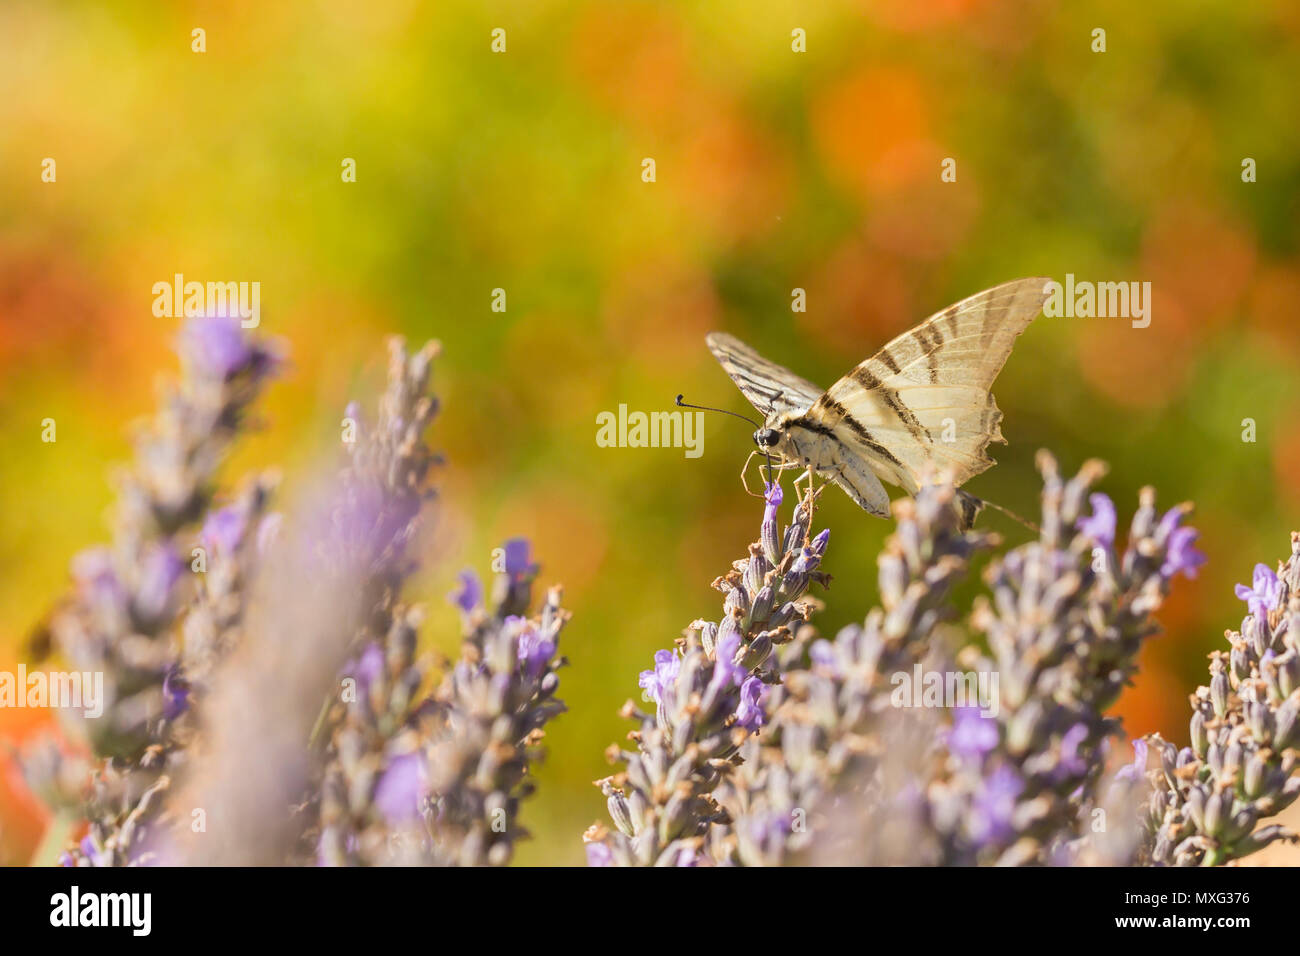 Les rares swallowtail butterfly (Iphiclides podalirius) volant fleur en fleur tandis que la pollinisation et d'alimentation sur le nectar de lavande pourpre. Banque D'Images